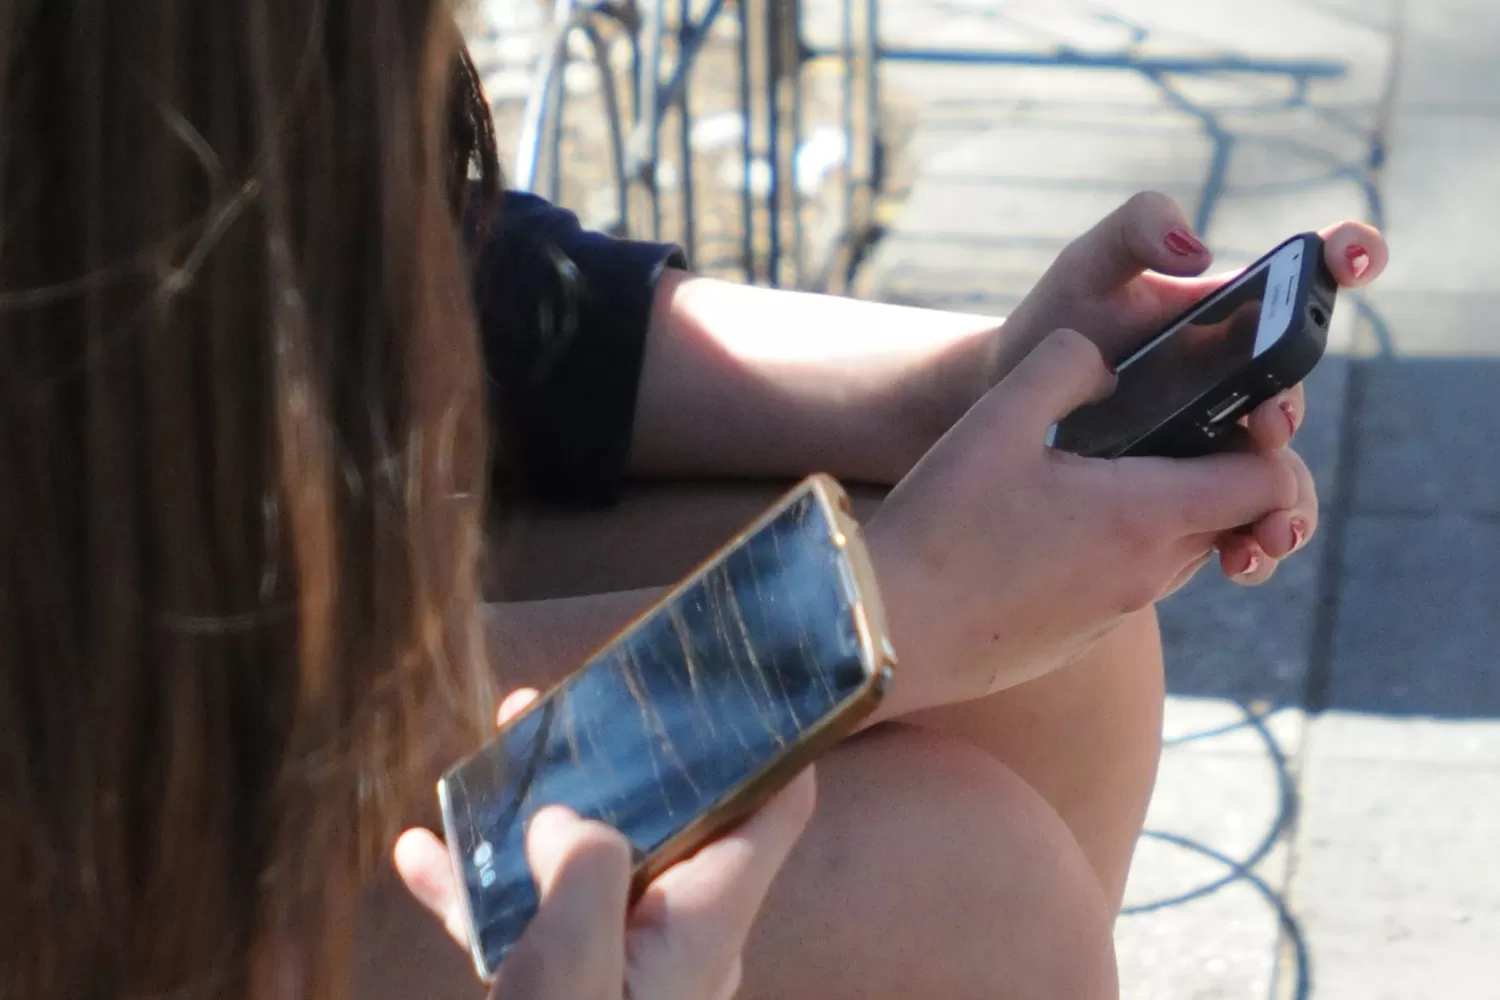 HORAS FRENTE A LA PANTALLA. Los adolescentes incorporaron el celular a sus vidas y pueden ser vulnerados a través de las redes sociales. ARCHIVO LA GACETA / FOTO DE ANALÍA JARAMILLO